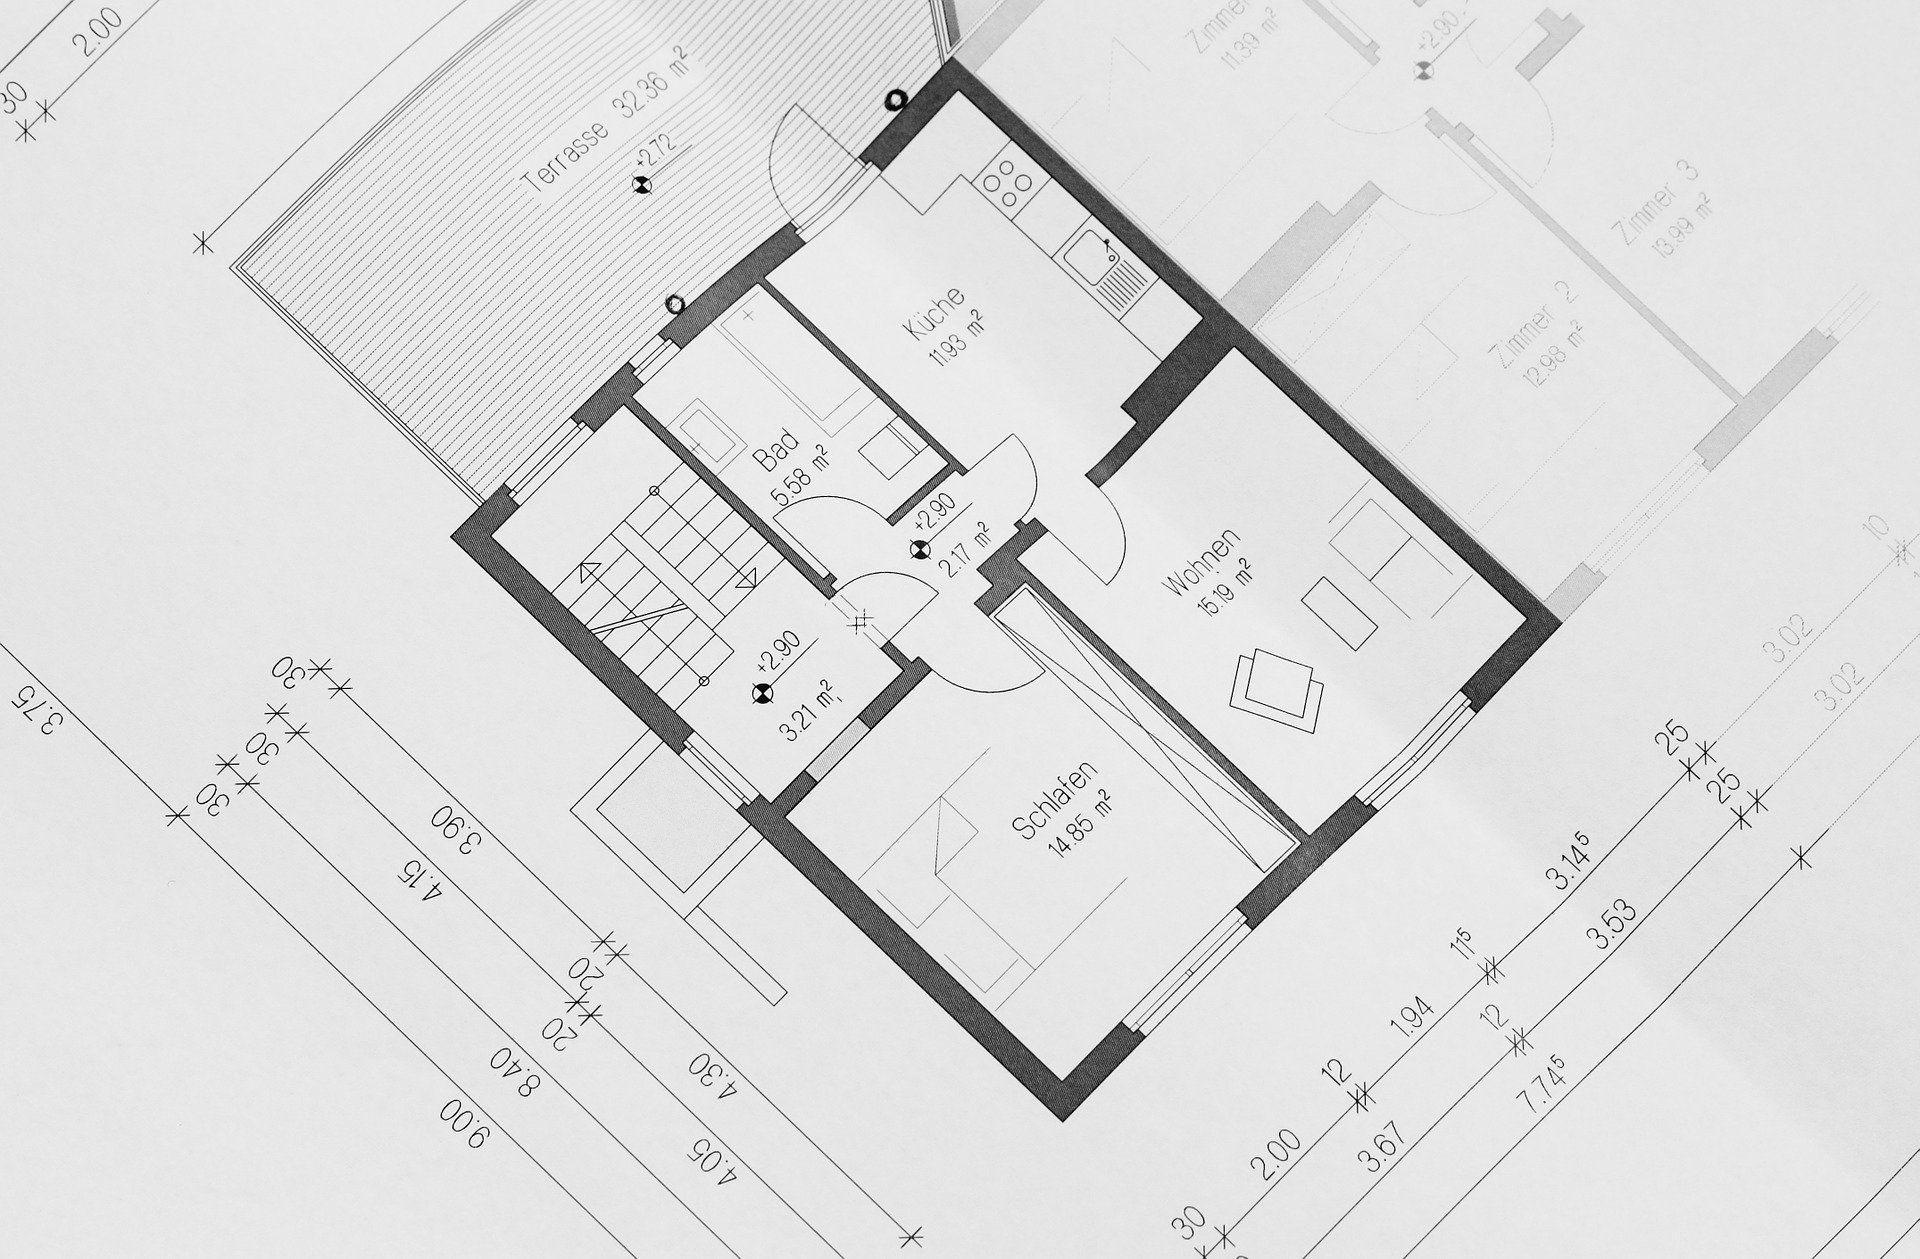 Architekturplanung und Bauplanung – alles aus professioneller Hand